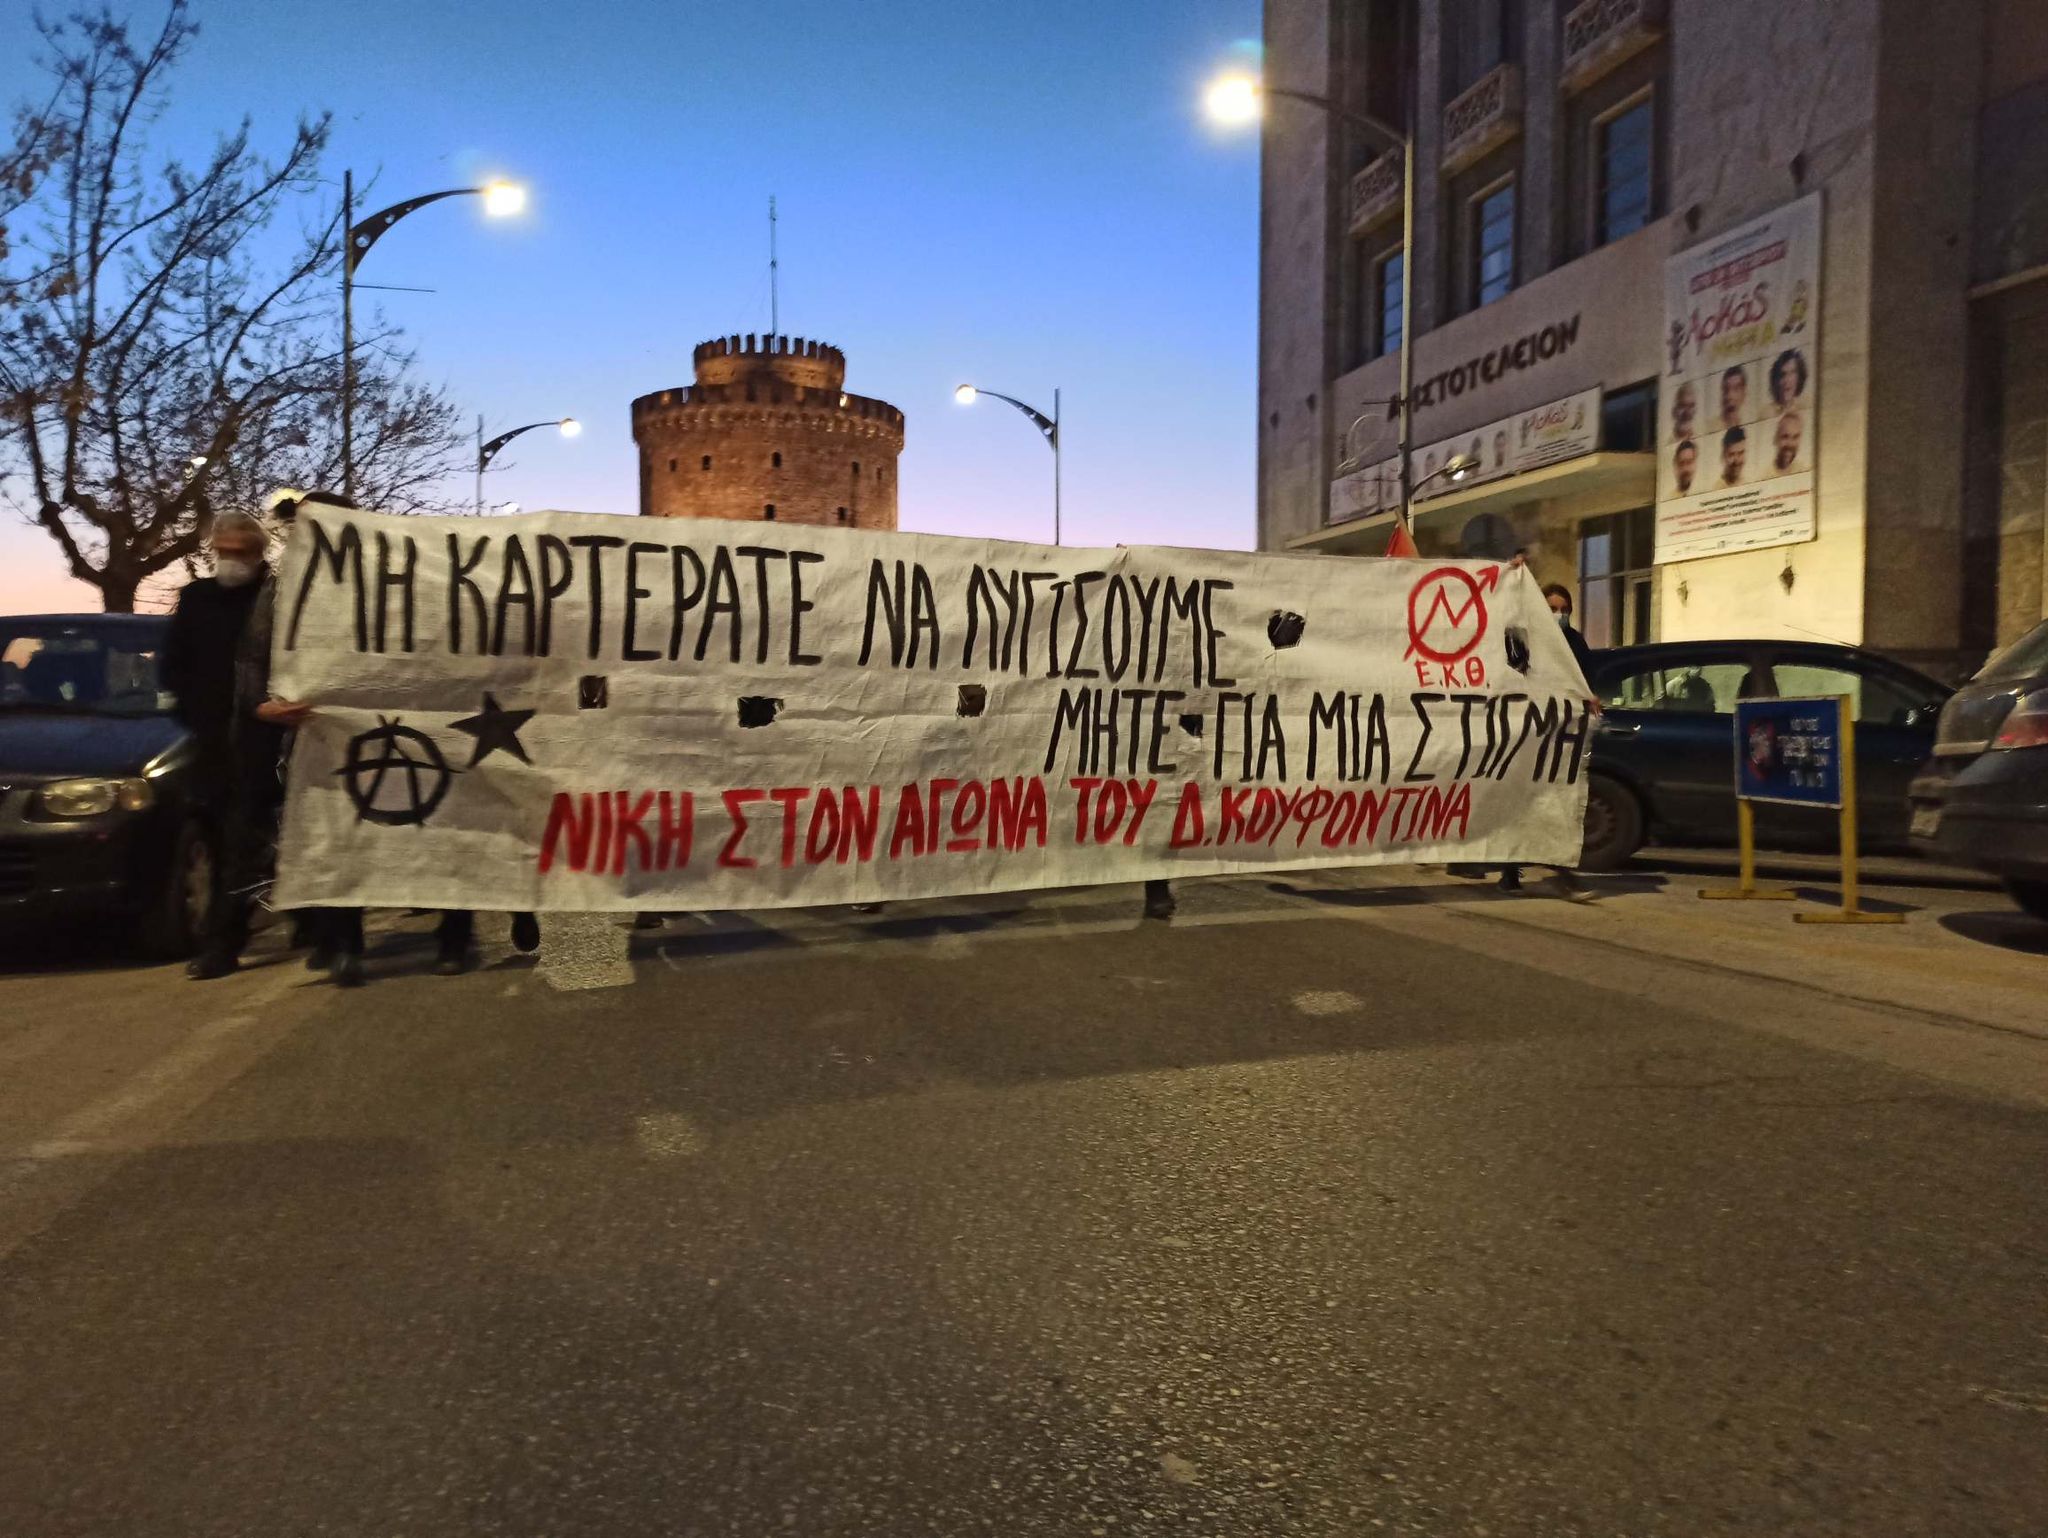 Μην καρτεράτε να λυγίσουμε μήτε για μια στιγμή. Μαζική διαδήλωση αλληλεγγύης στον απεργό πείνας Δ. Κουφοντίνα στη Θεσσαλονίκη [2/3/2021]